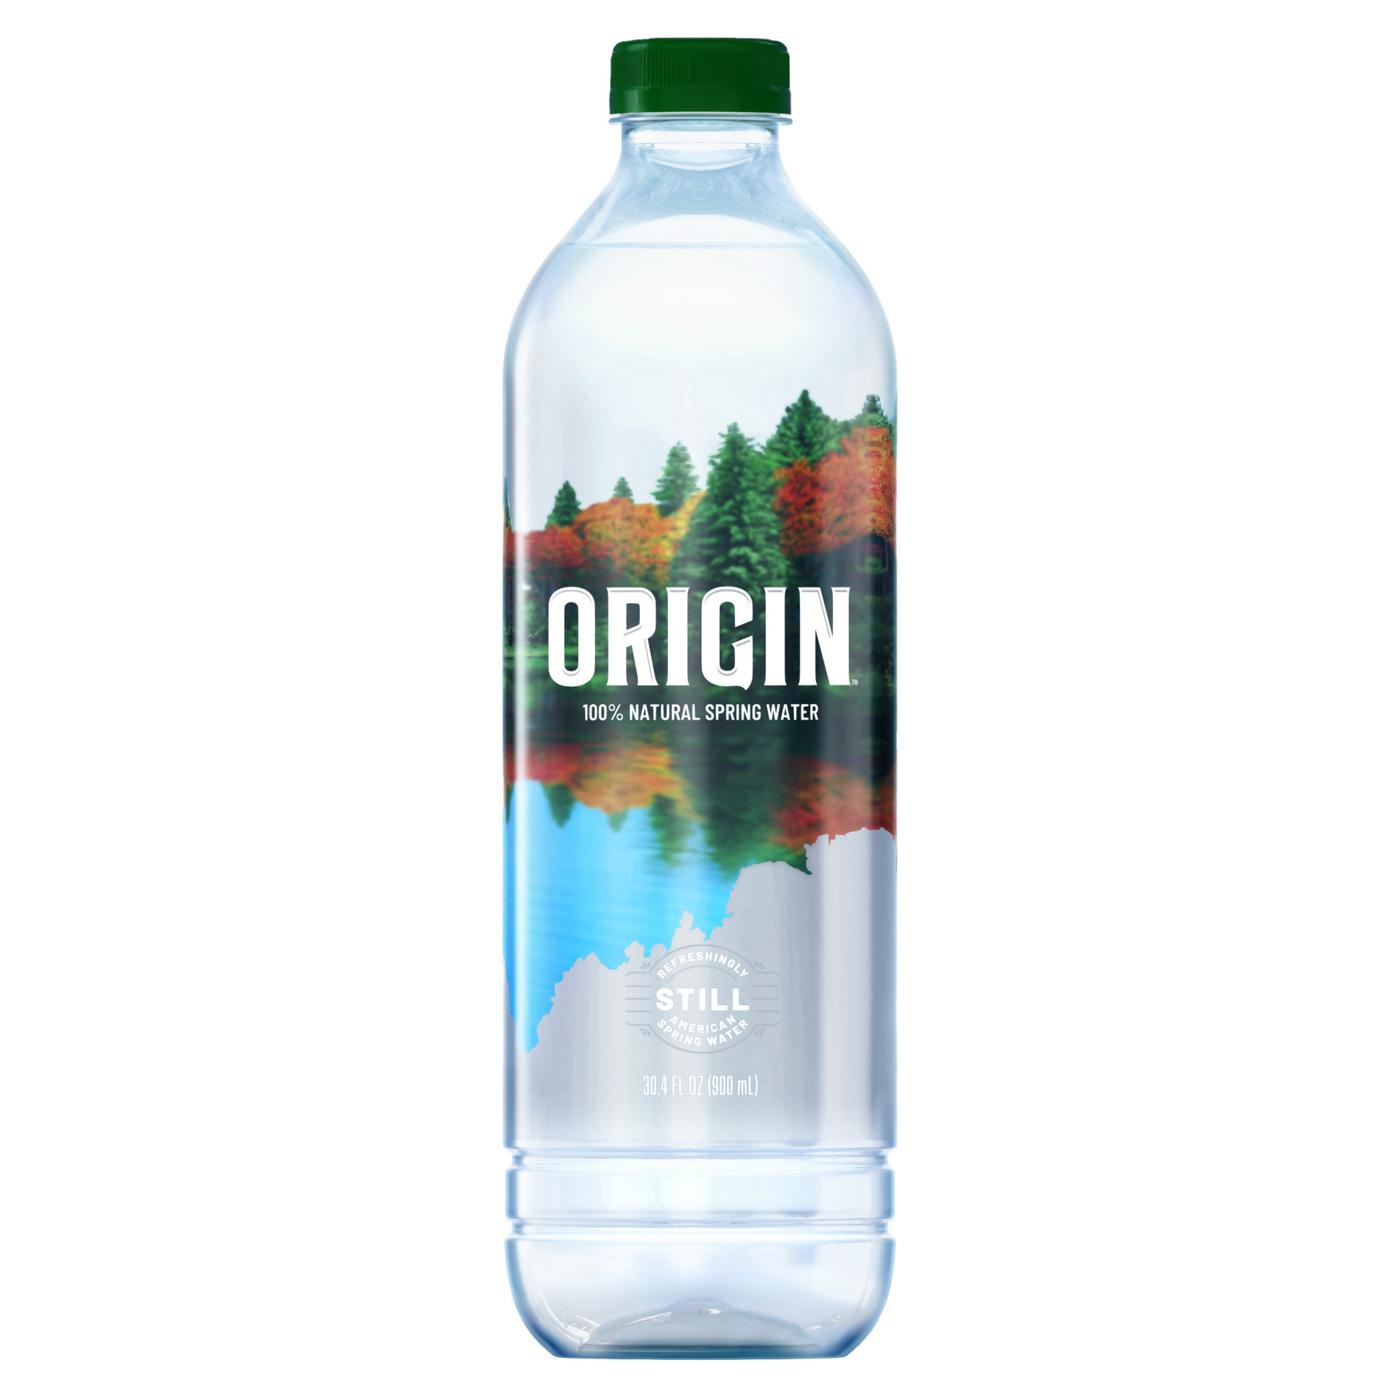 ORIGIN Natural Spring Water; image 1 of 5